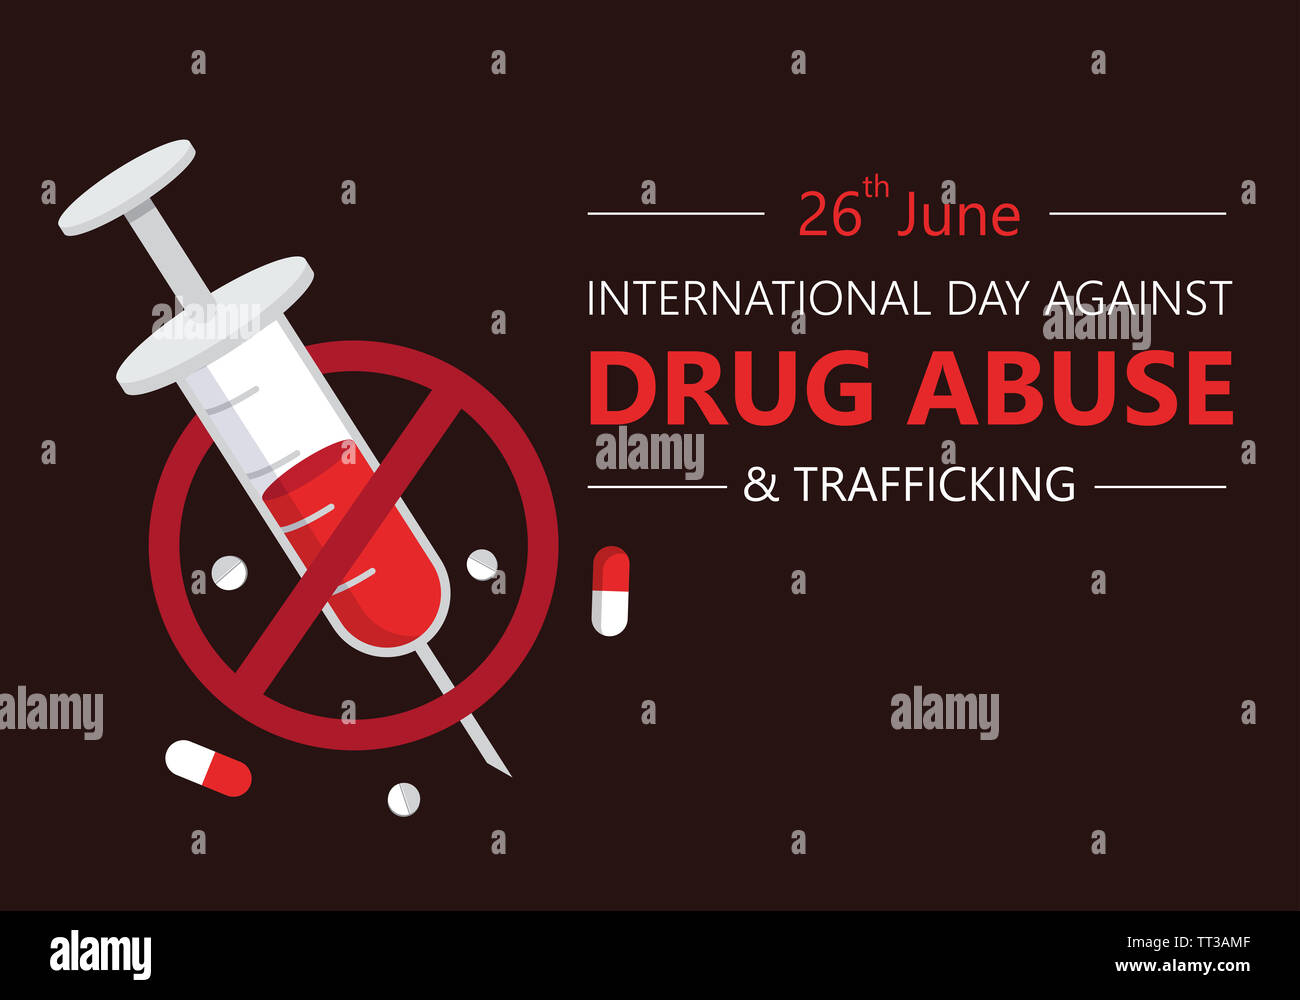 Drug Awareness Poster Stock Photos & Drug Awareness Poster Stock Images ...